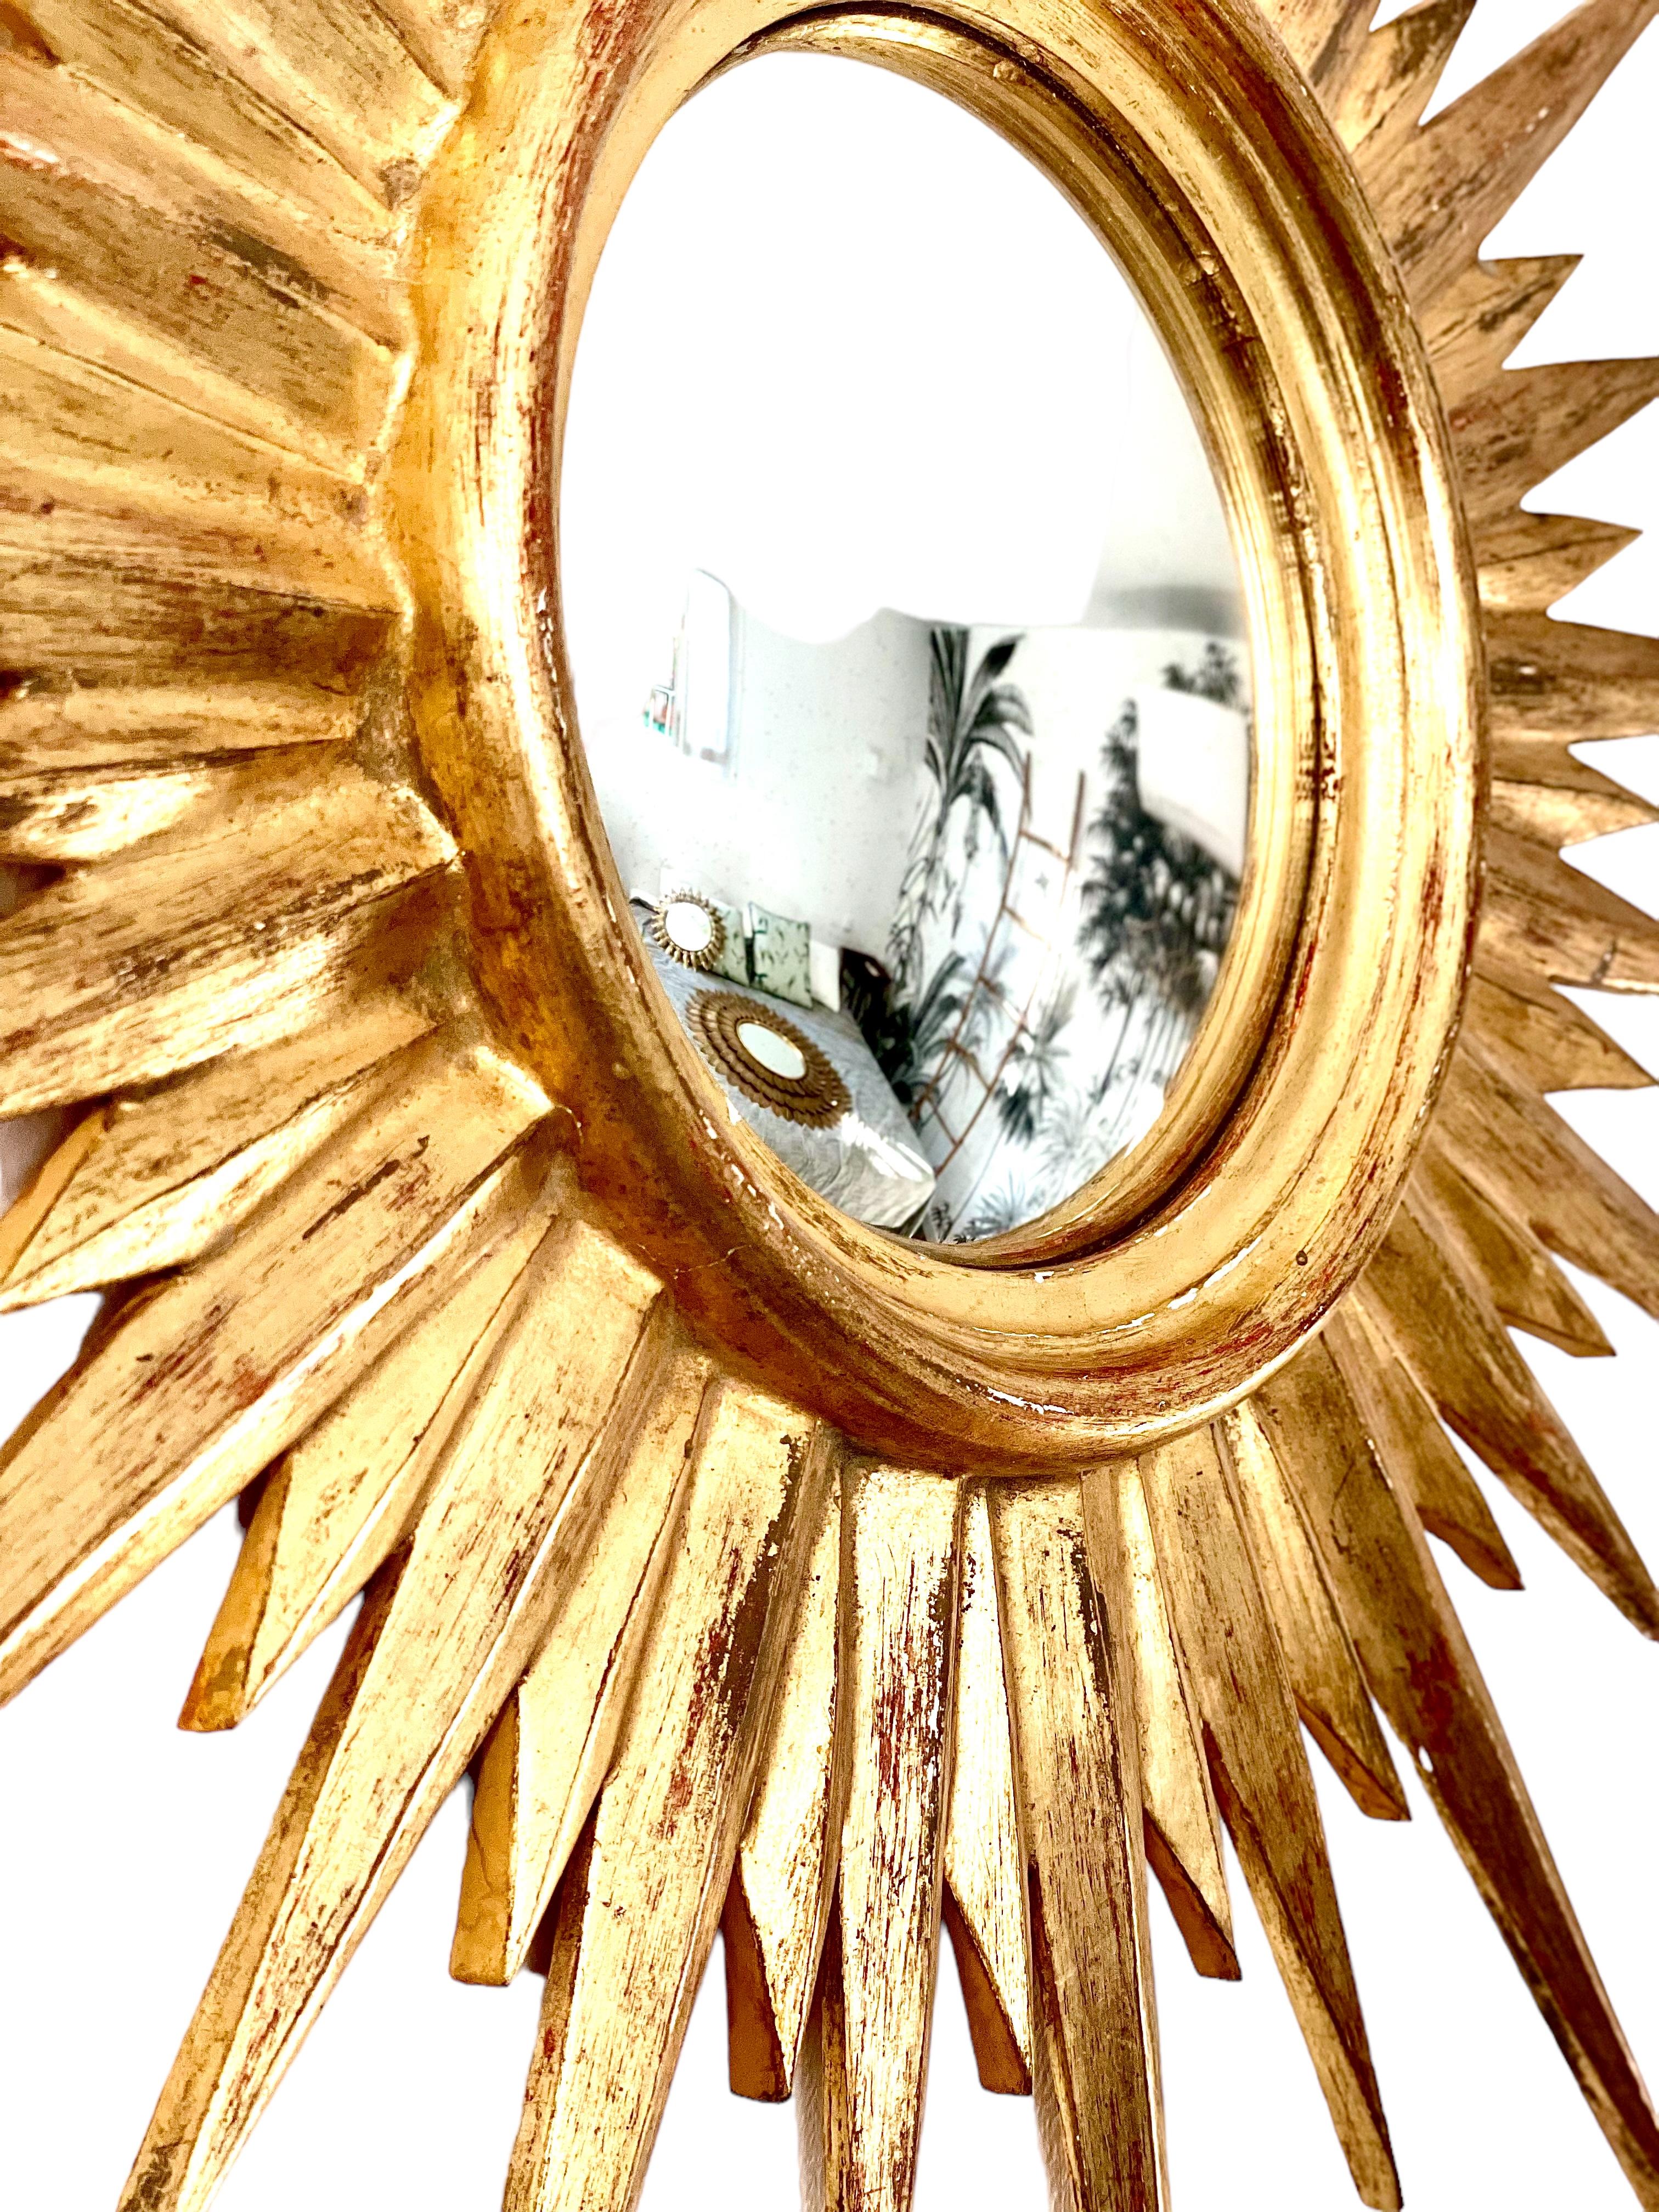 Ein breiter und exquisiter französischer konvexer Spiegel mit Sonnenschliff in goldenem Stuck. 
In sehr gutem Zustand.
